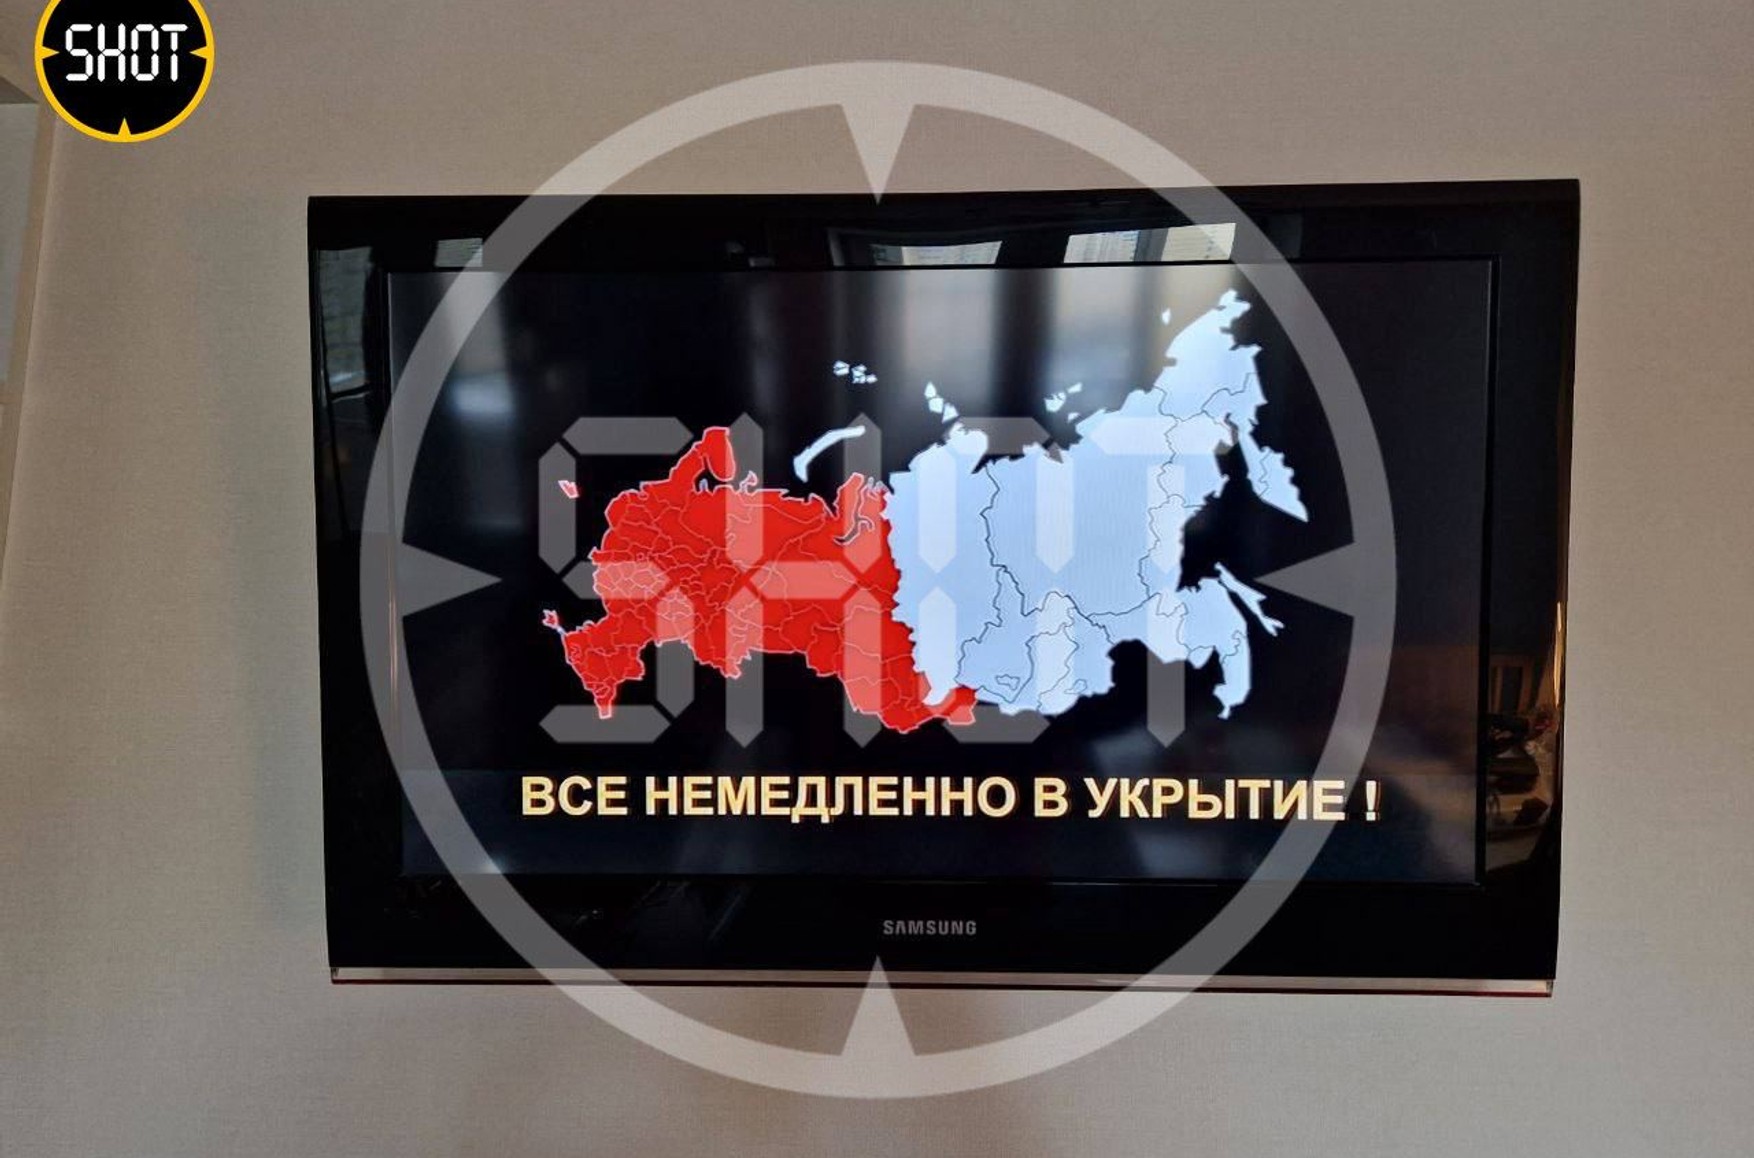 В нескольких регионах России и Крыму объявили воздушную тревогу на радио и телеканалах. В МЧС заявили о взломе серверов